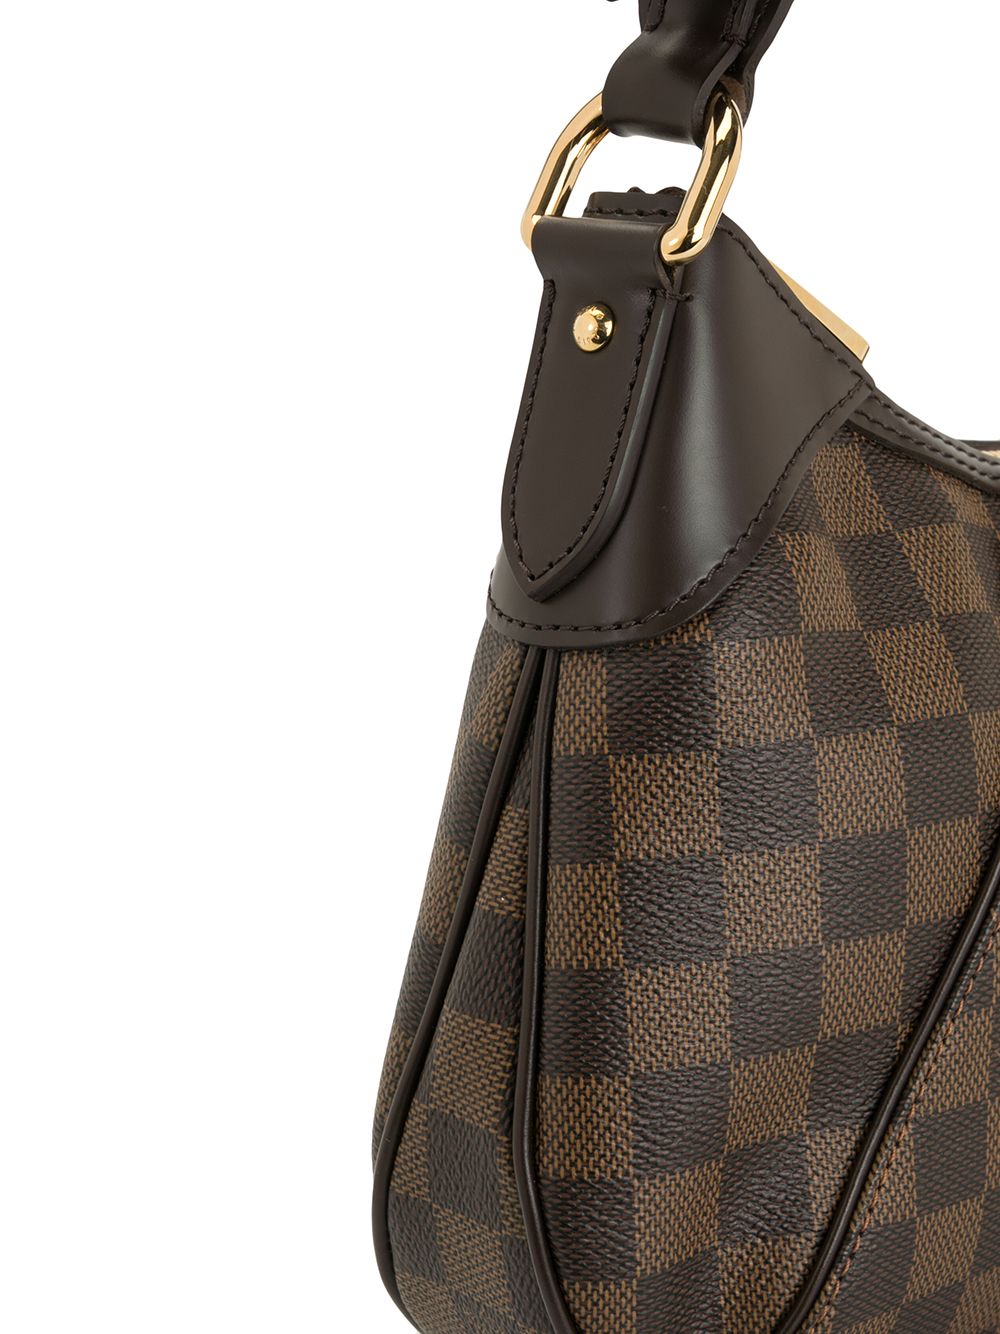 Louis Vuitton Thames Pm Hobo Handbag Purse Monogram Canvas M56384 Ar3180  Auction